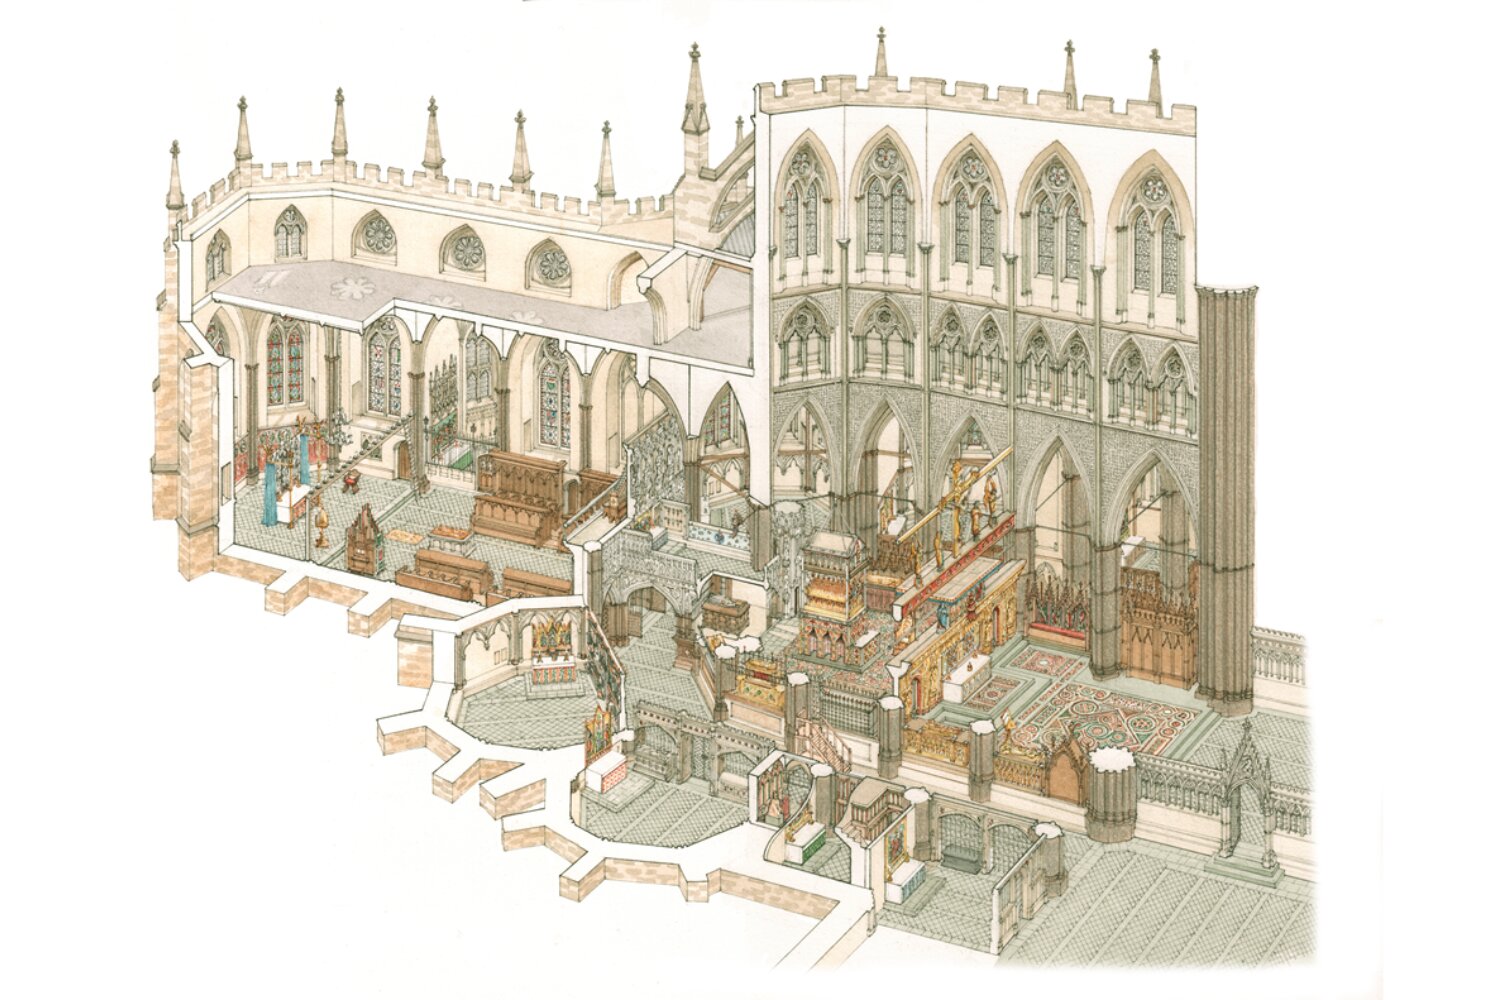 Une chapelle médiévale perdue met en lumière les sépultures royales à l’abbaye de Westminster et révèle une nouvelle étude sur la reconstruction du XVe siècle